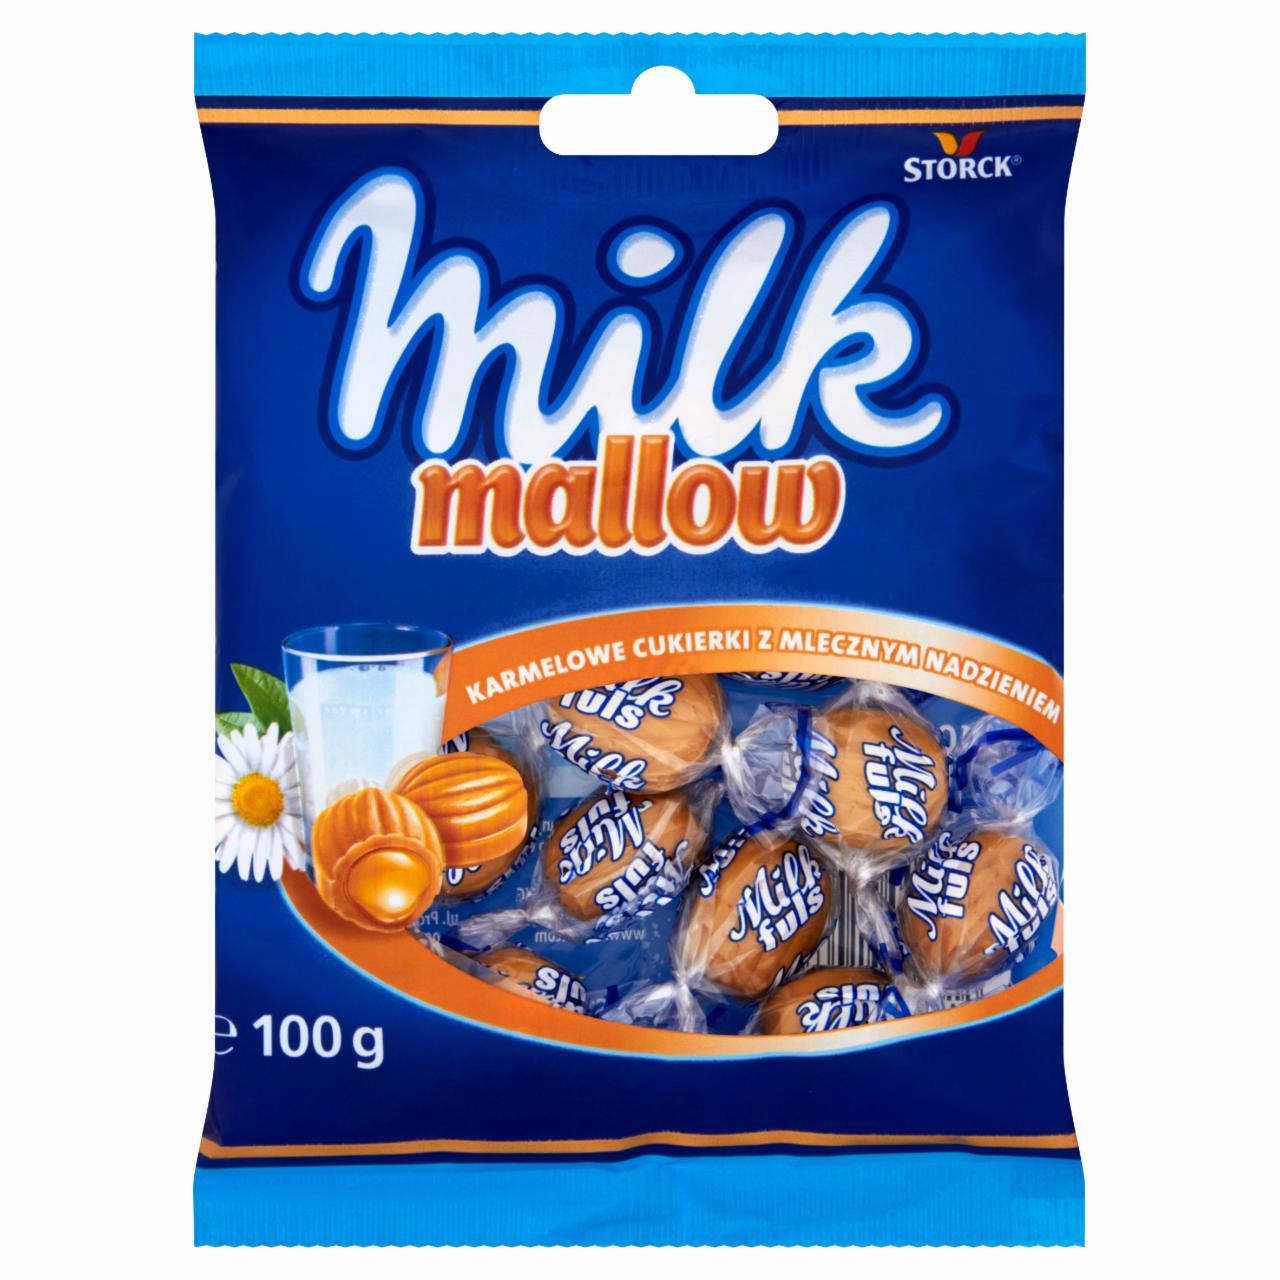 Zdjęcia - Storck Milk Mallow Karmelowe cukierki z mlecznym nadzieniem 100 g